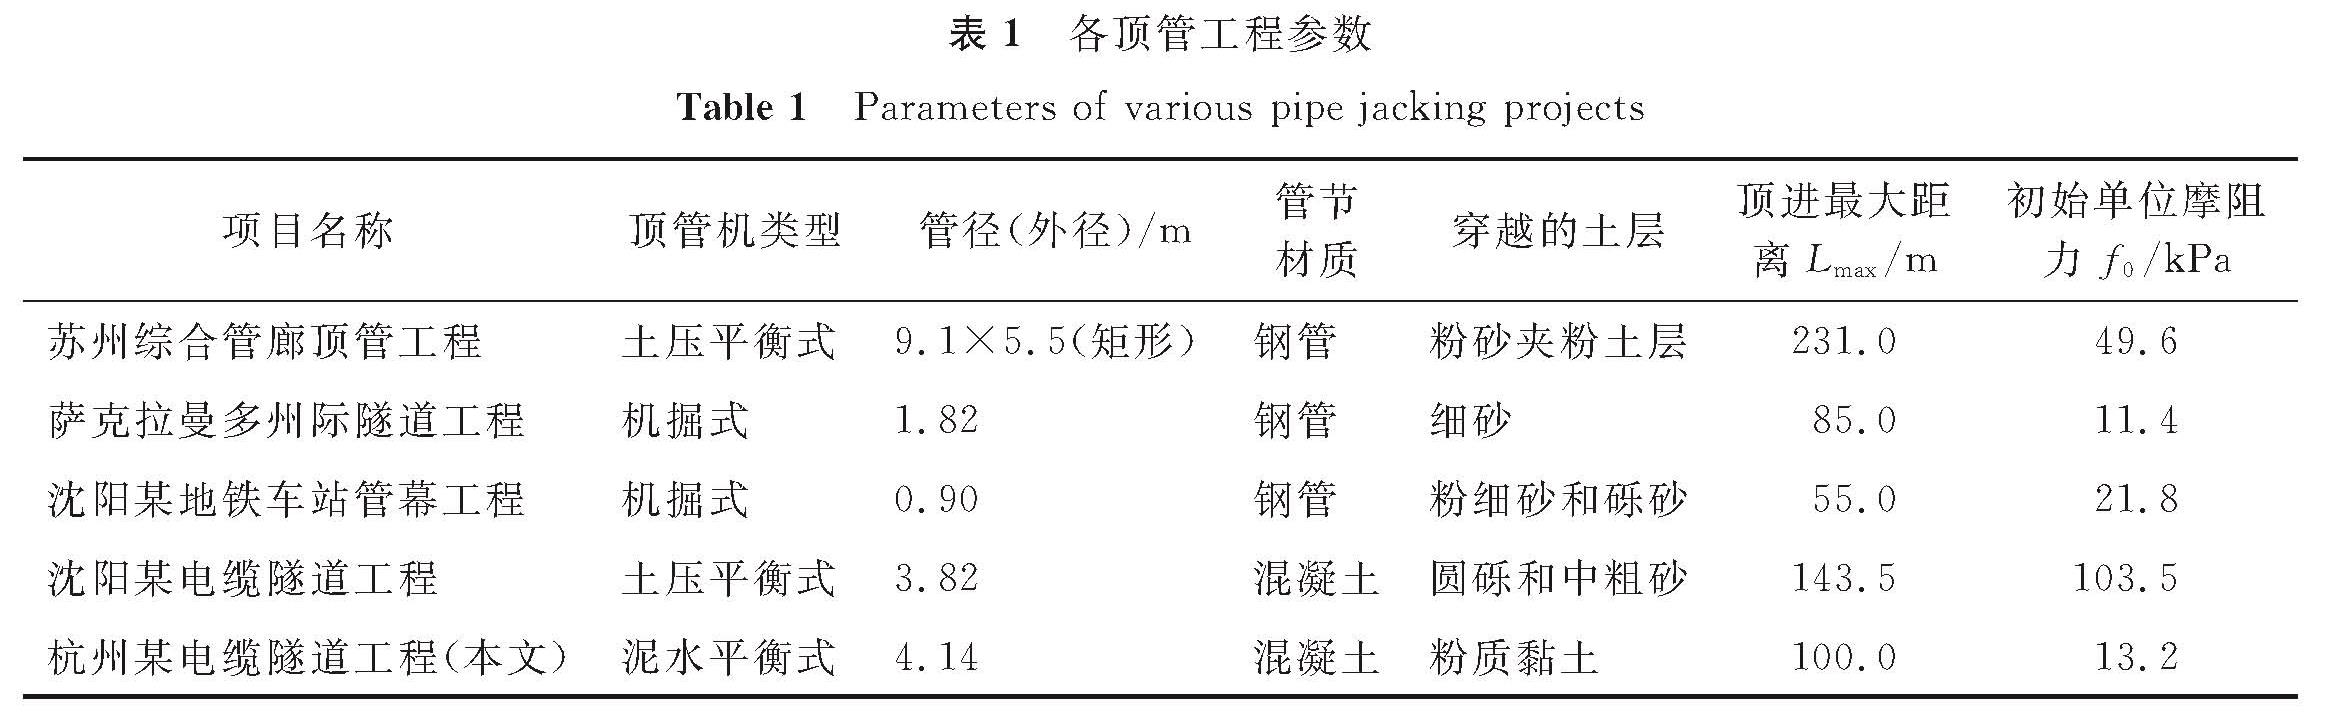 表1 各顶管工程参数<br/>Table 1 Parameters of various pipe jacking projects